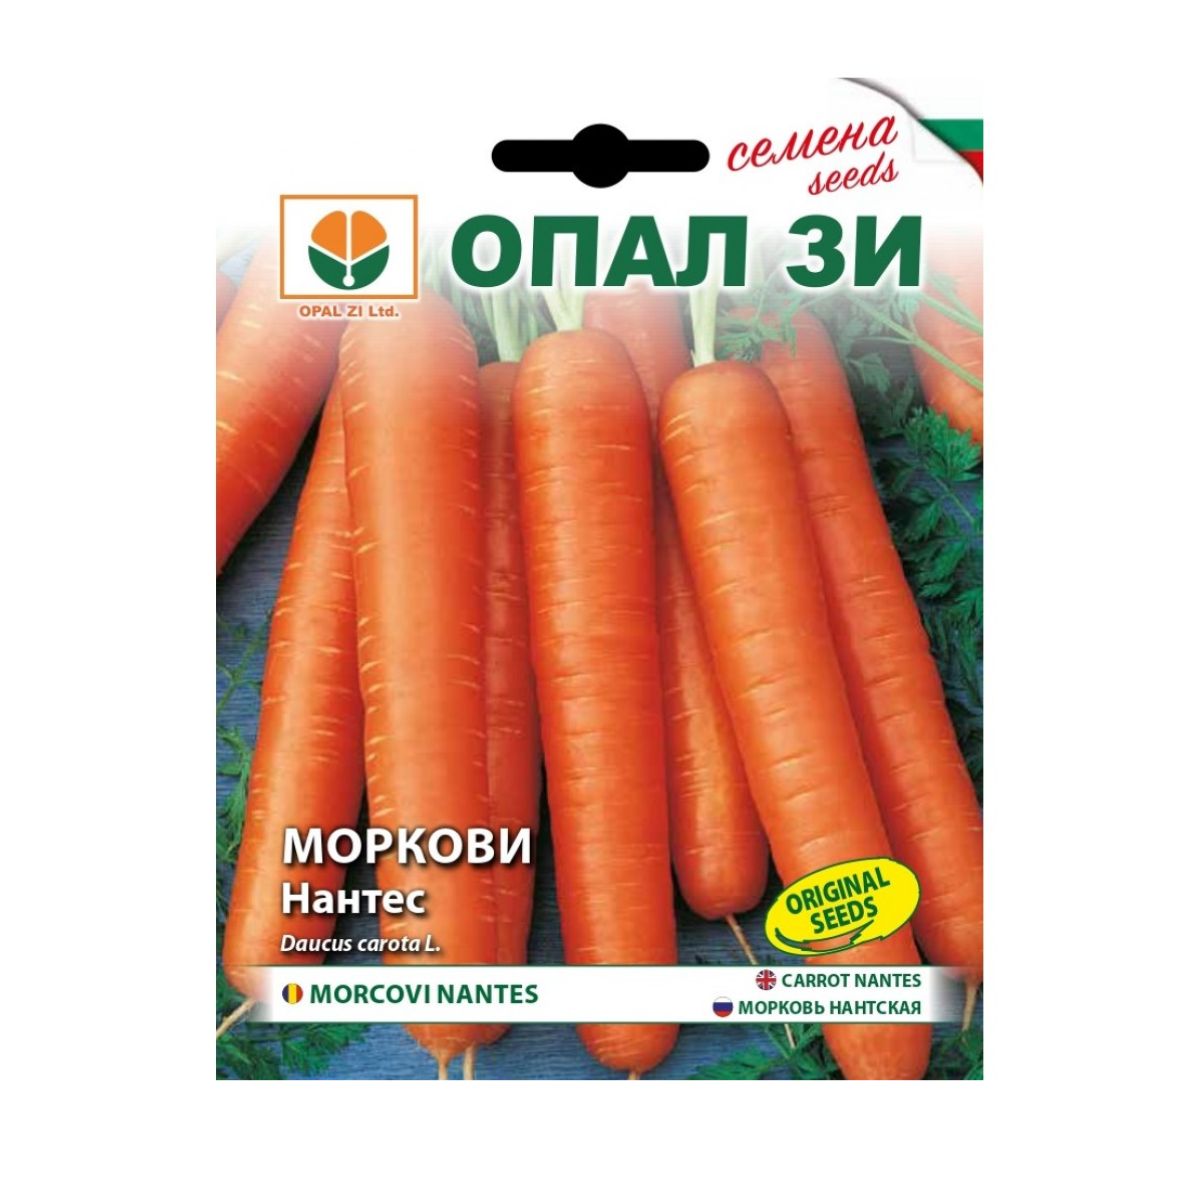 Morcov - Seminte de morcov Nantes 2, 5 grame, OPAL, hectarul.ro